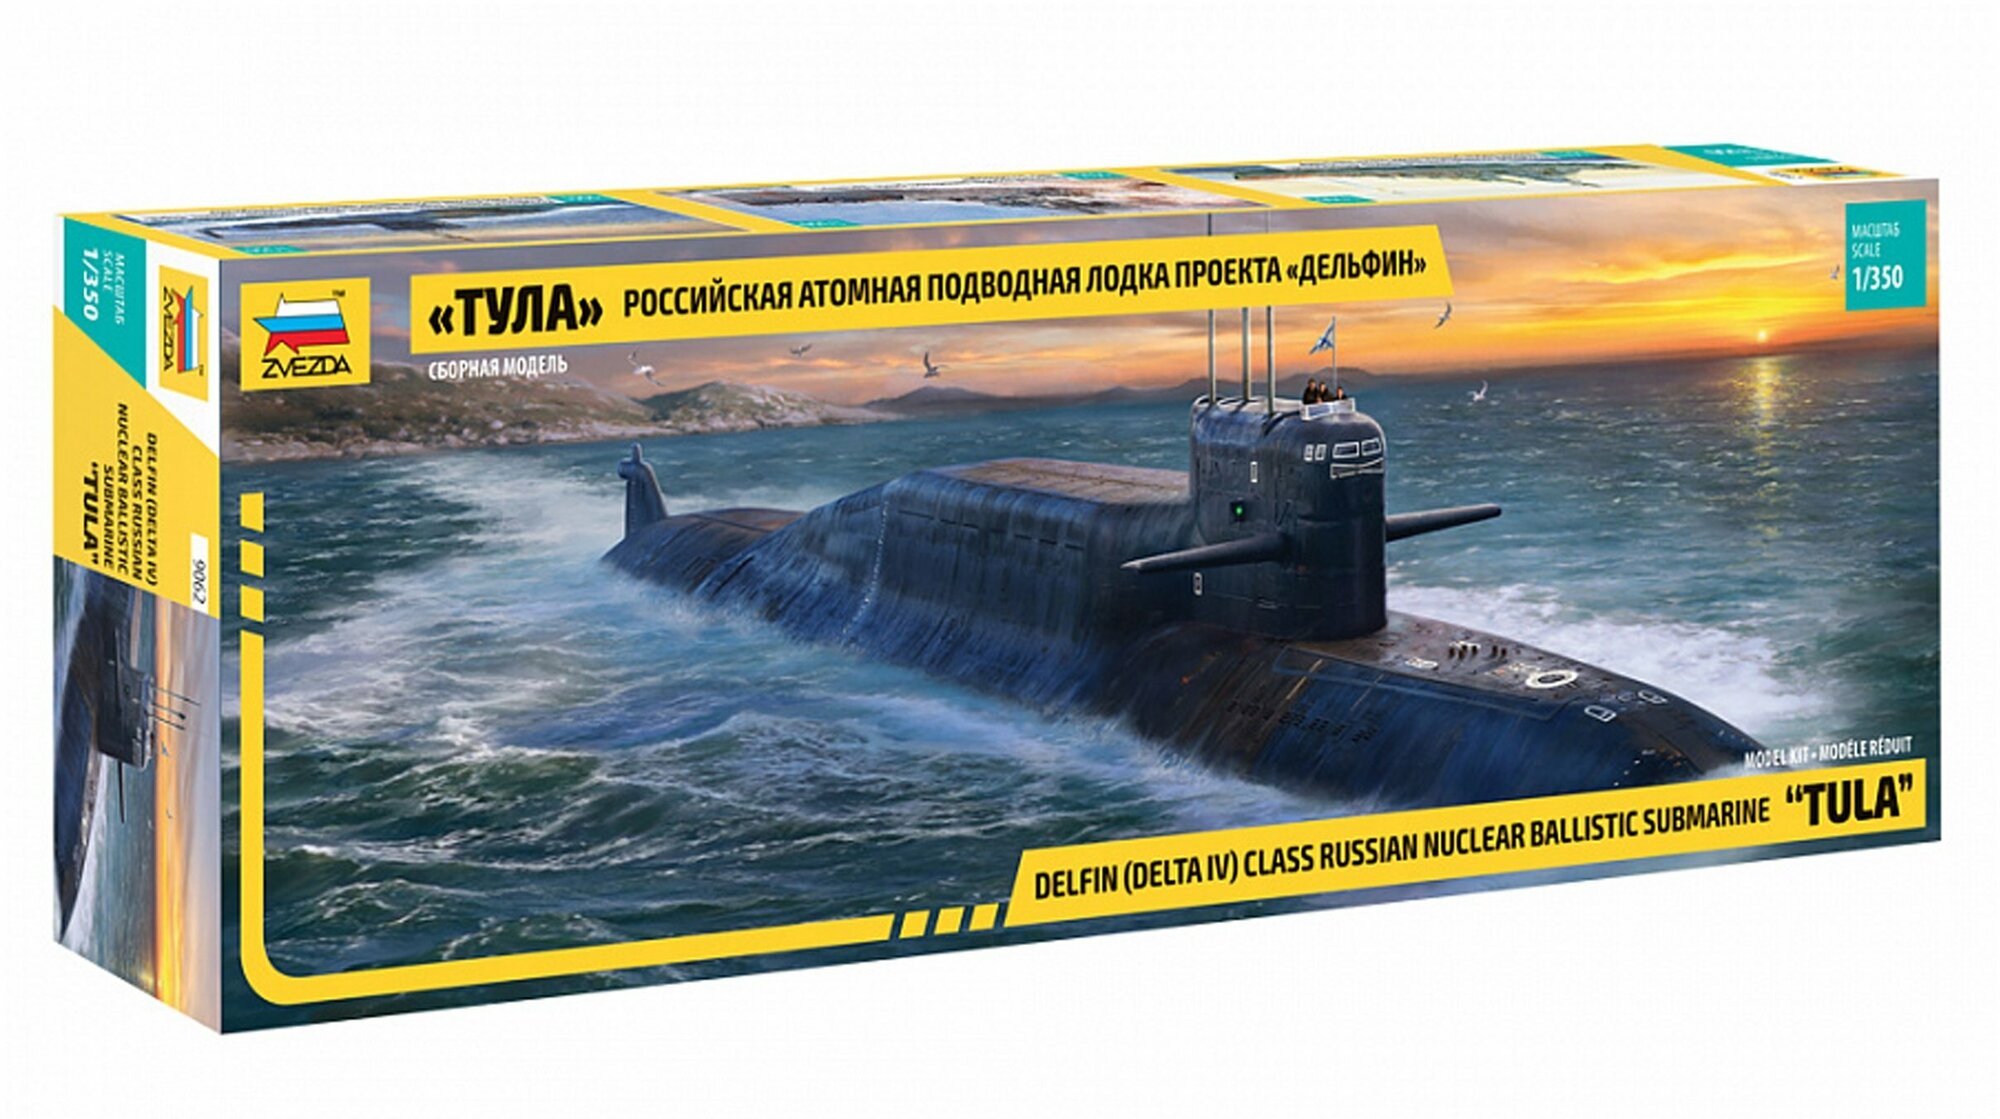 Сборная модель ZVEZDA Атомная подводная лодка "Тула" проекта "Дельфин" (9062) 1:350